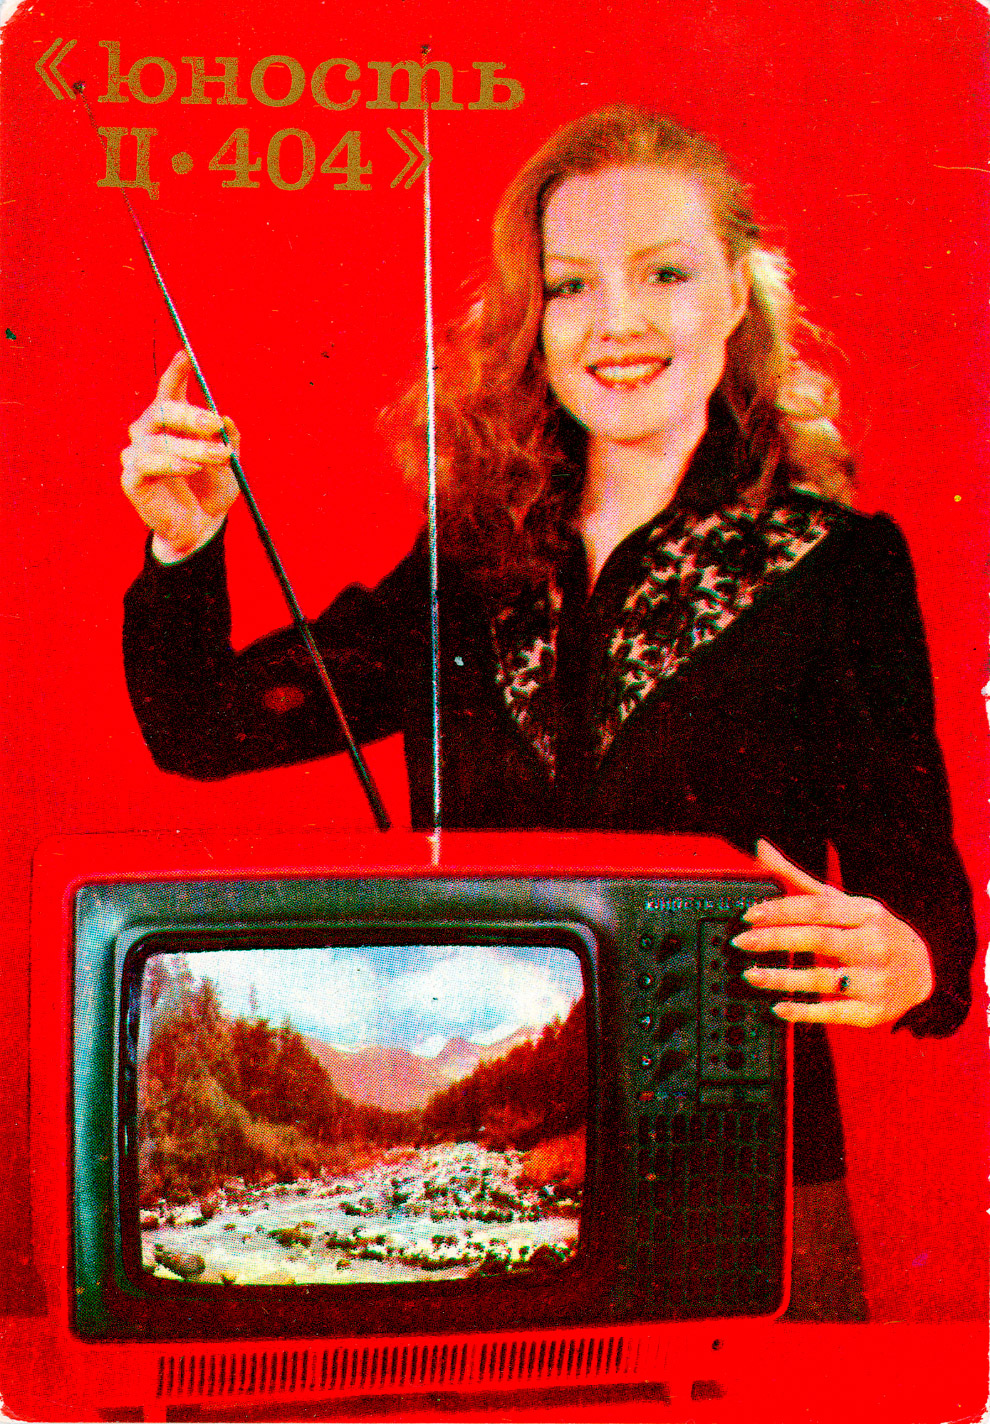 Реклама техники в СССР